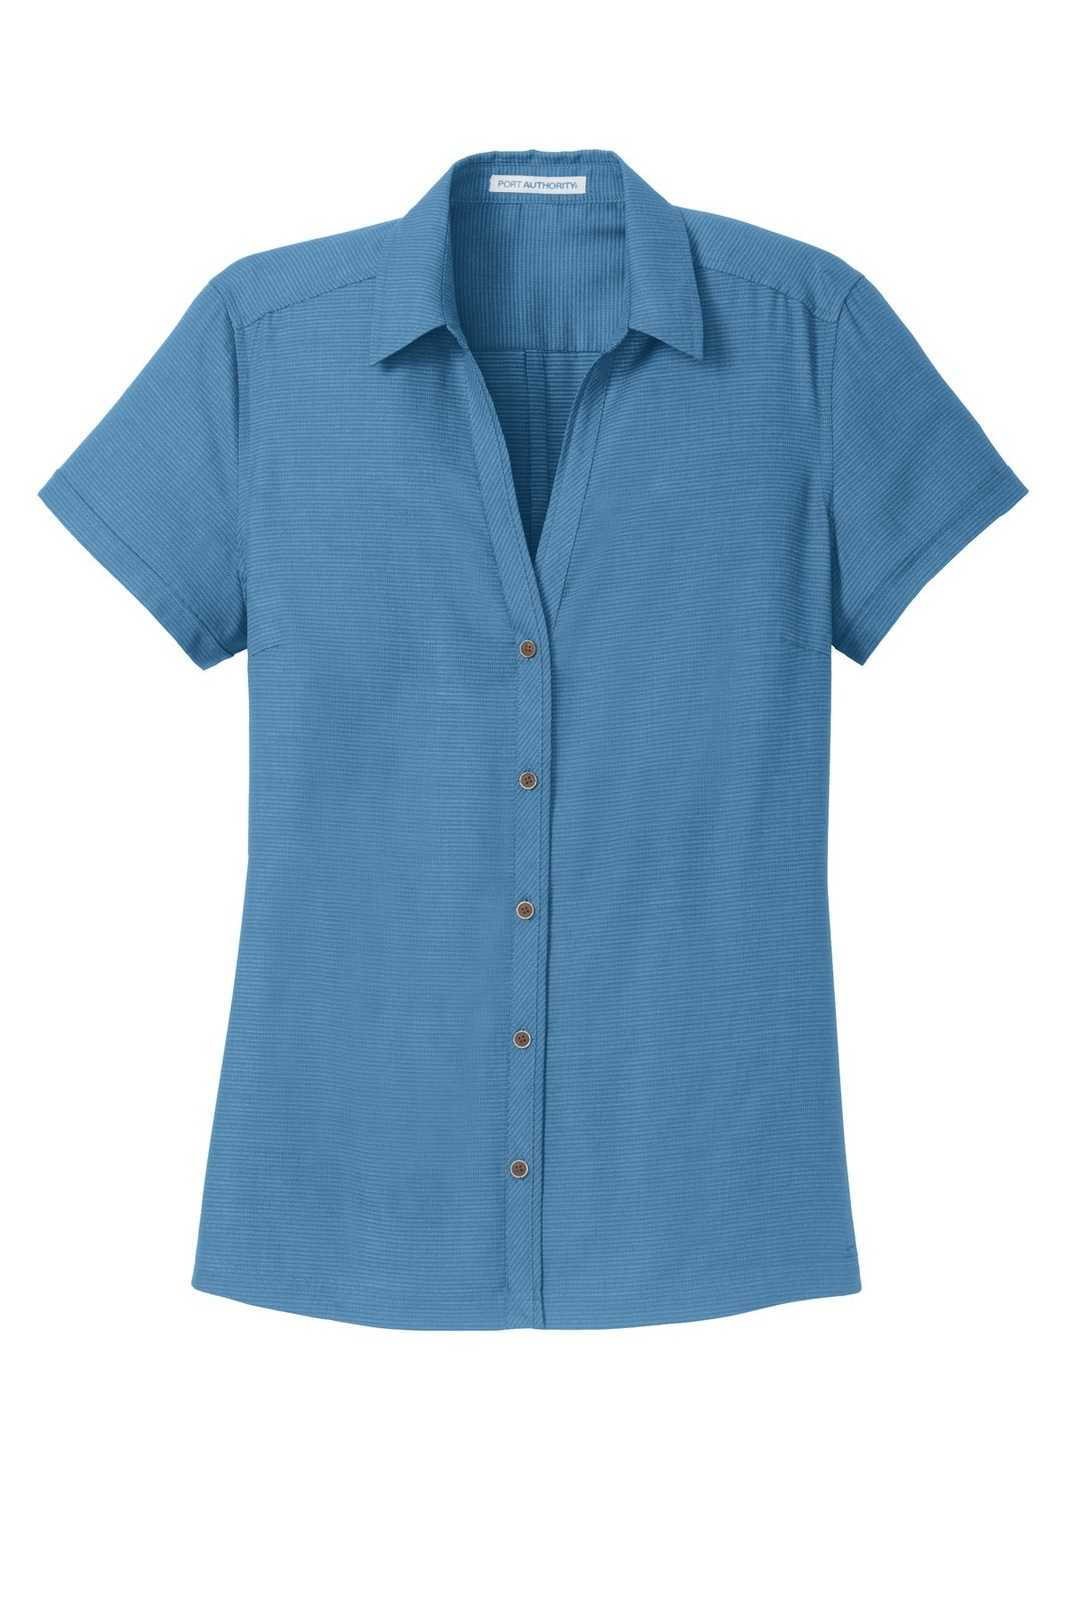 Port Authority L662 Ladies Textured Camp Shirt - Celadon - HIT a Double - 5